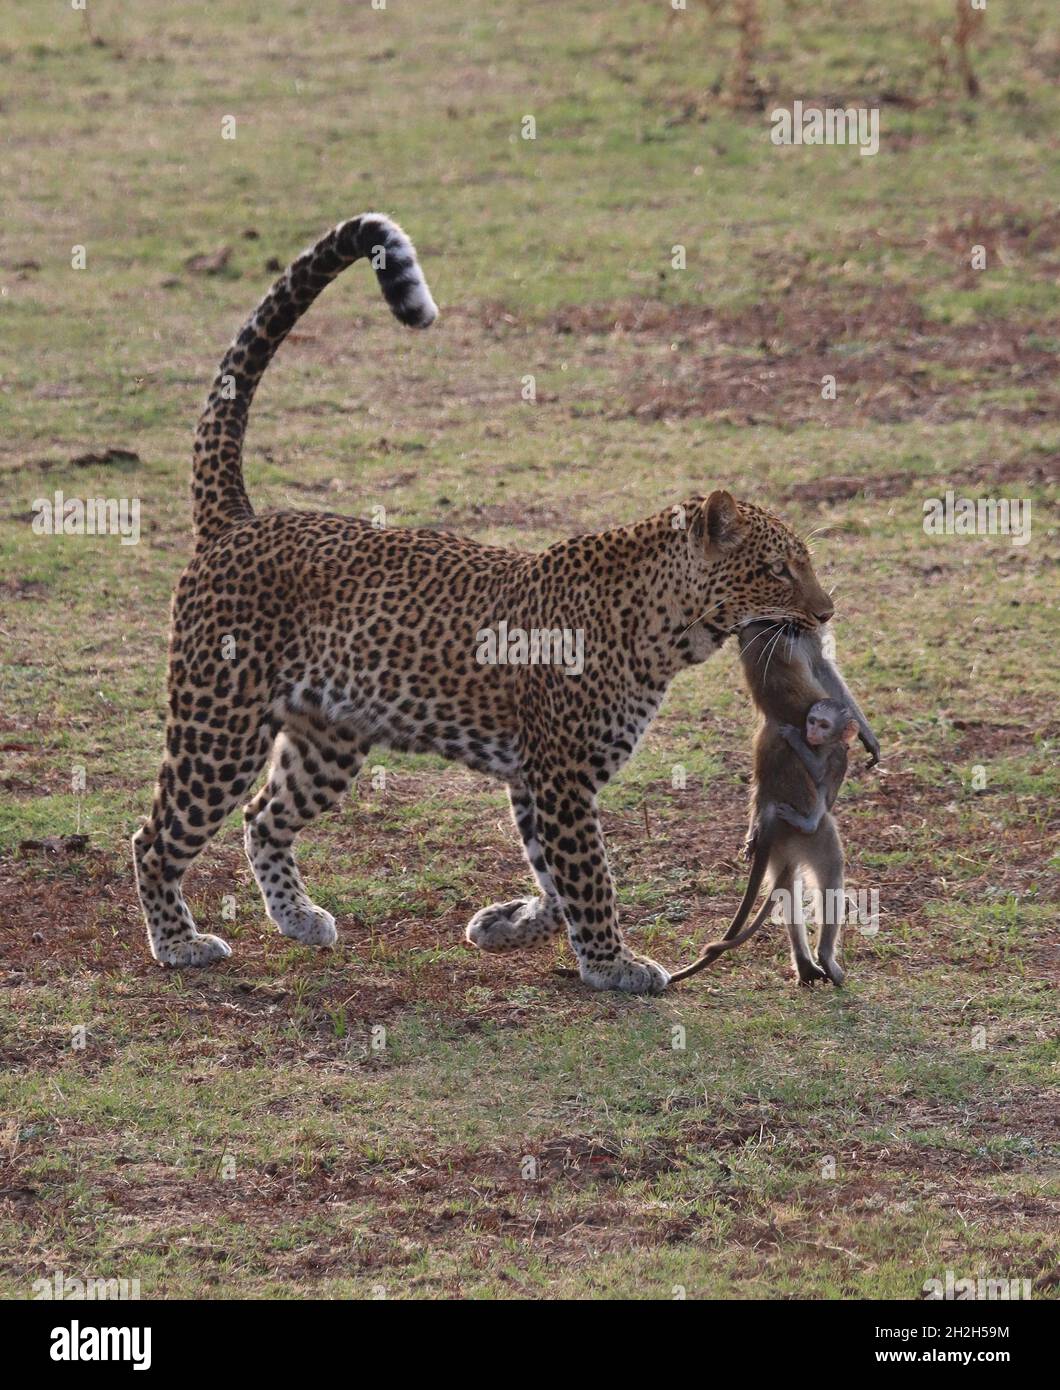 Dieser herzzerreißende Moment wurde im South Luangwa National Park, Sambia, festgehalten. SOUTH LUANGWA NATIONAL PARK, SAMBIA: DER HERZZERREISSENDE Moment ein Baby Mo Stockfoto